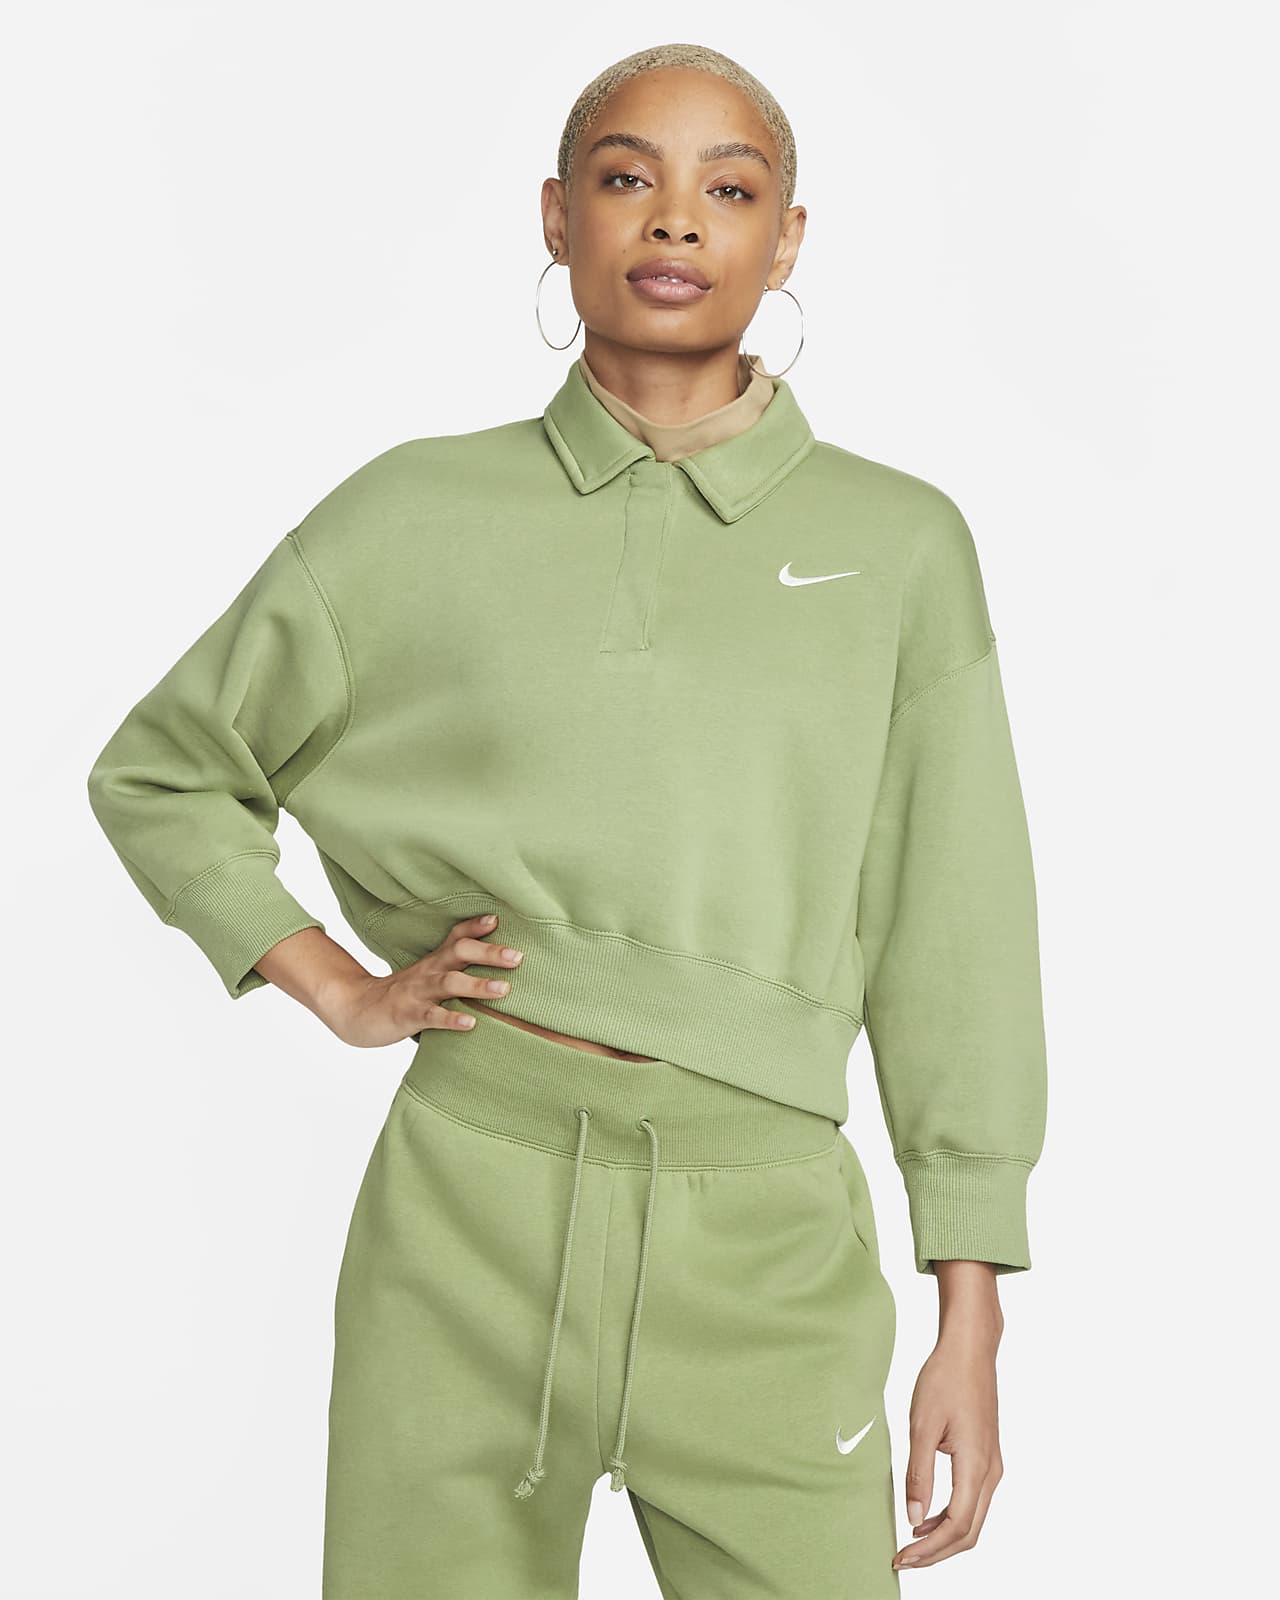 nicotine Avondeten Speciaal Nike Sportswear Phoenix Fleece Women's 3/4-Sleeve Crop Polo Sweatshirt. Nike  LU